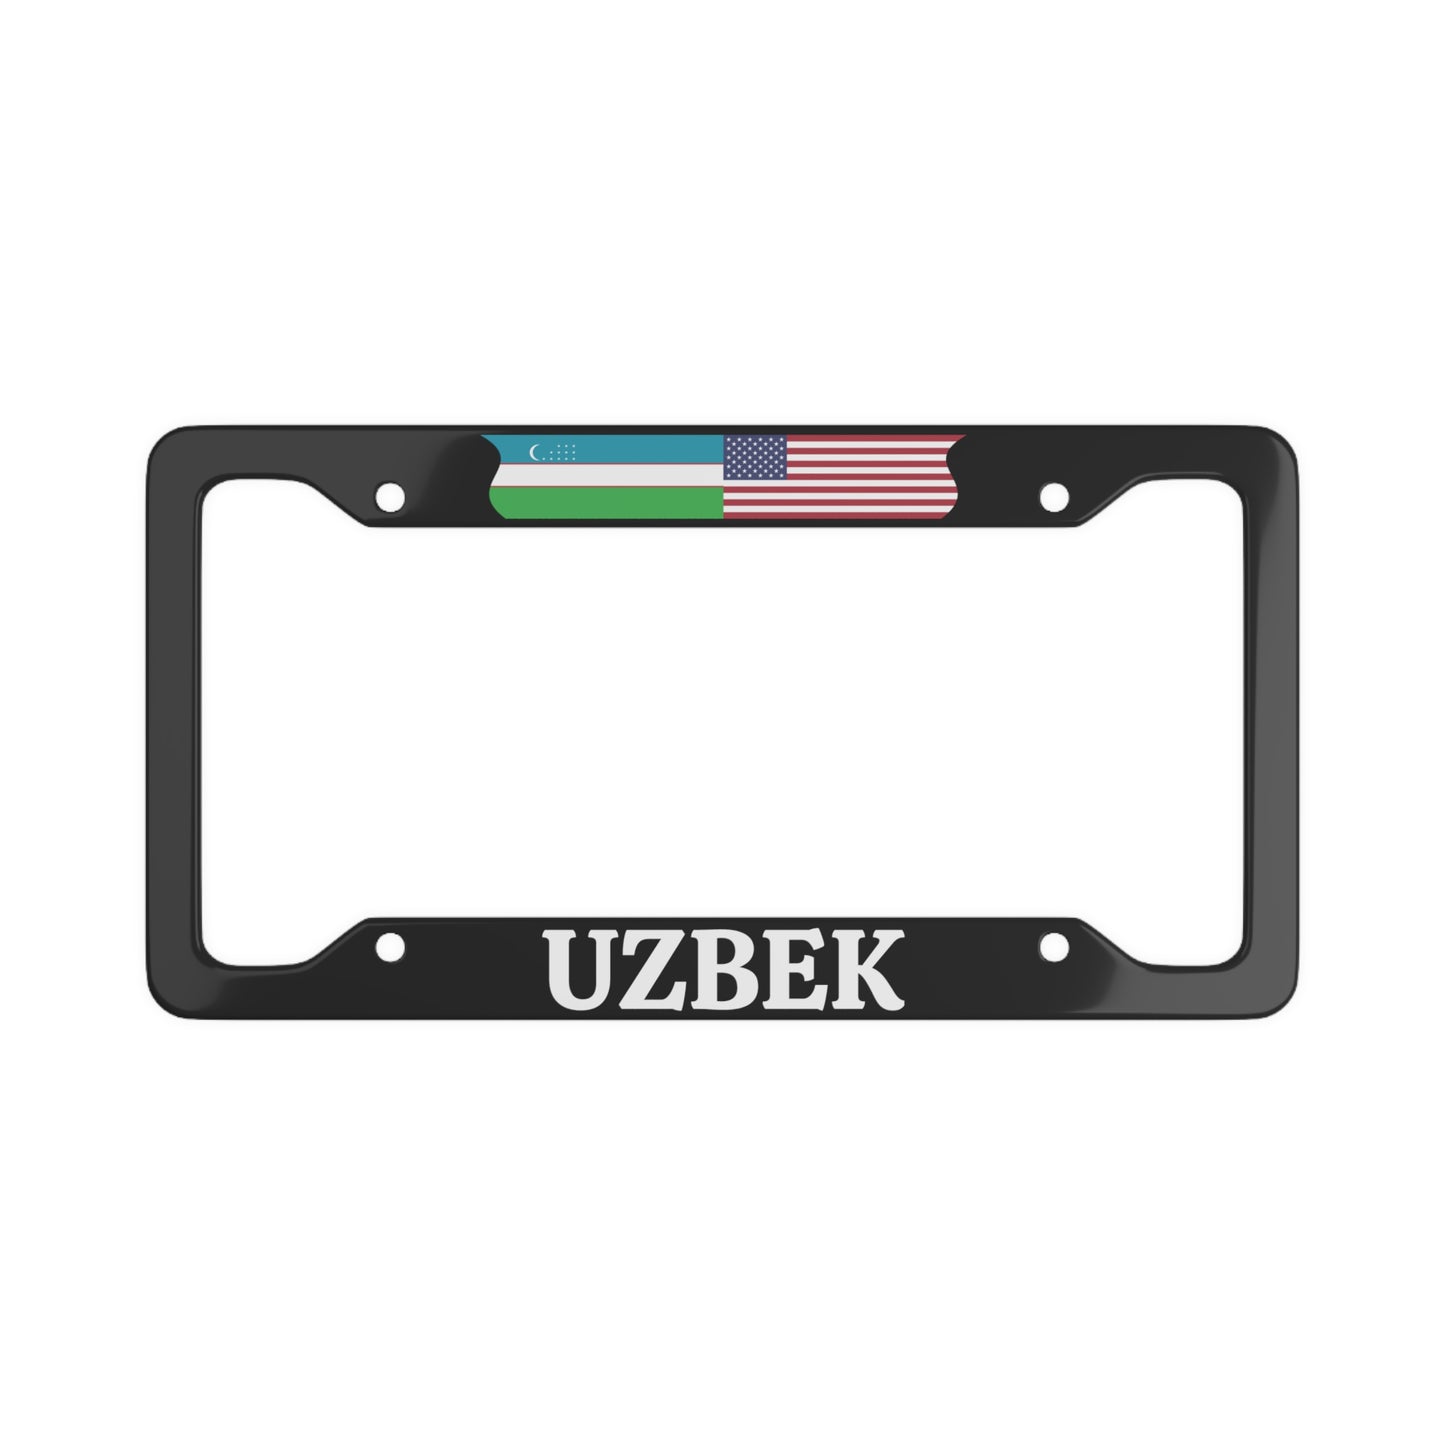 UZBEK with flag License Plate Frame